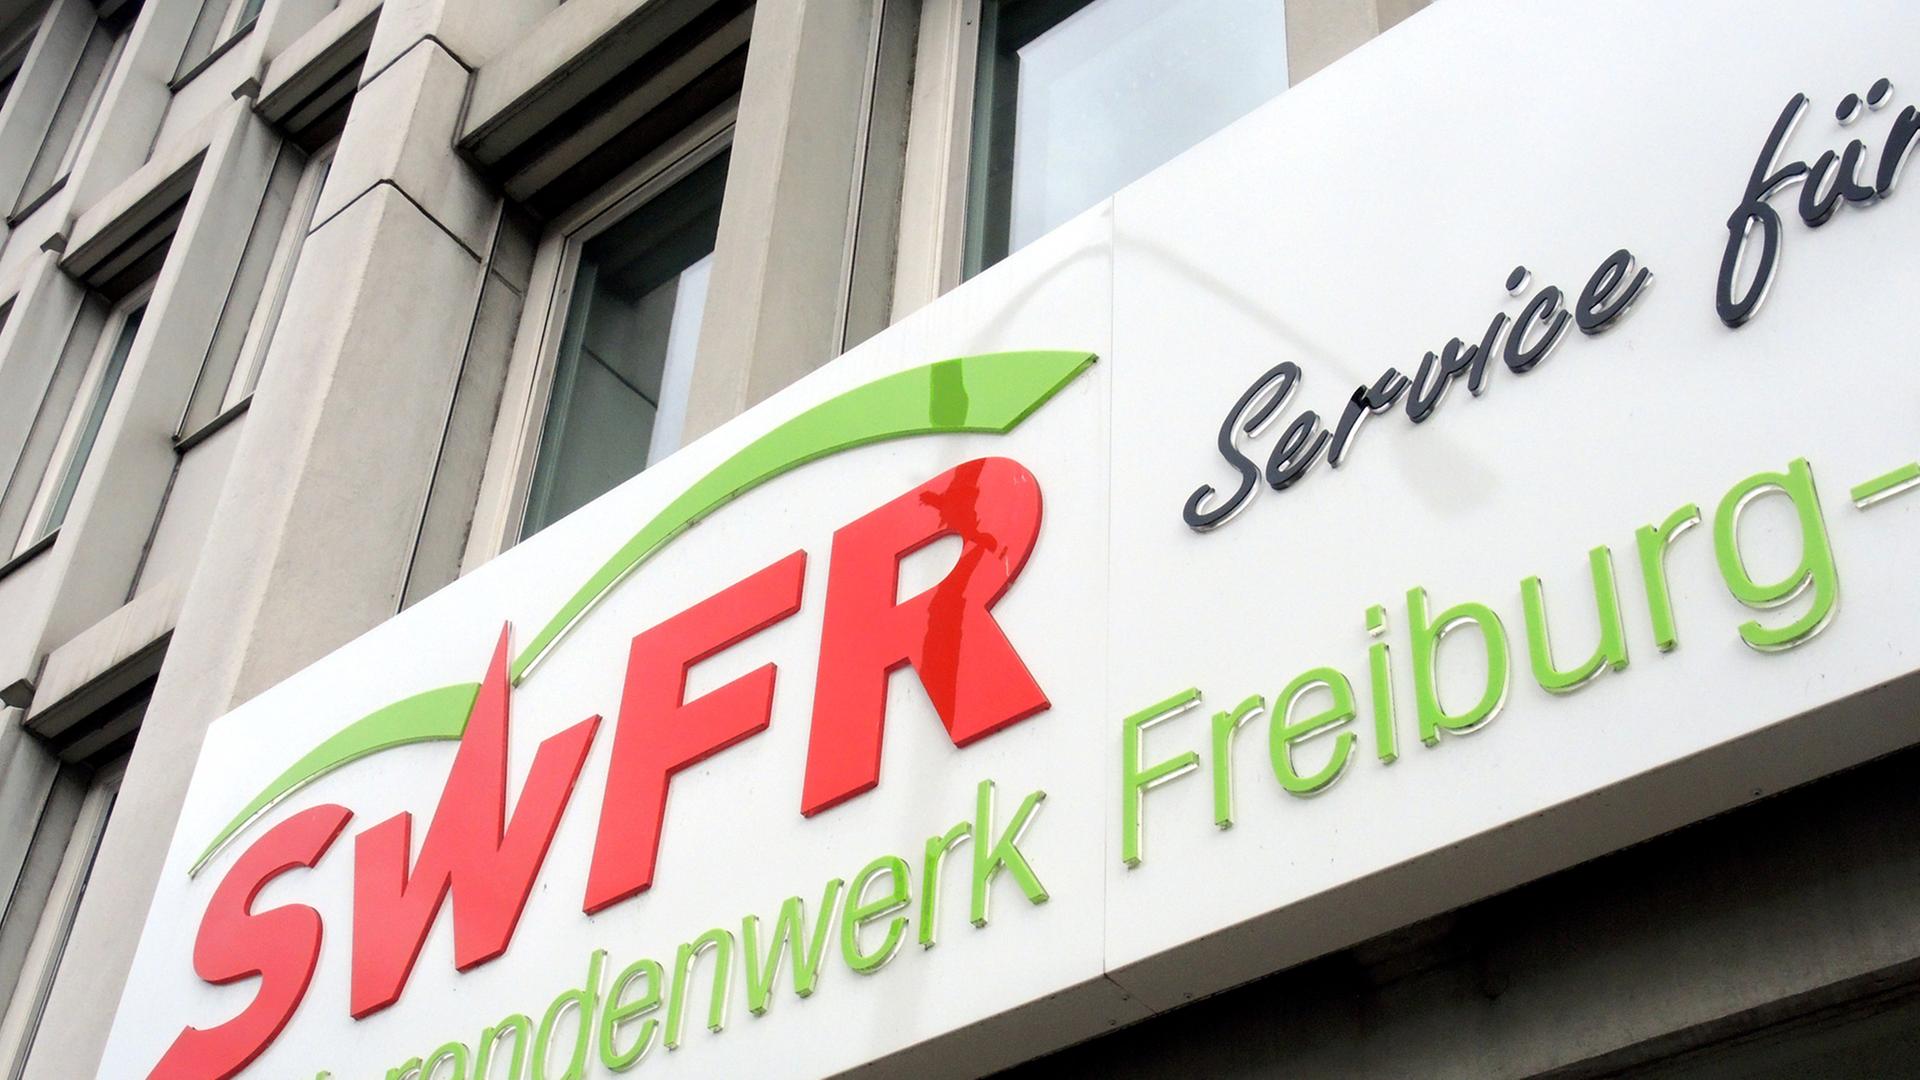 Mit der neuen, geschlechtsneutralen Bezeichnung "Studierendenwerk" ist am 23.08.2014 der Eingang zum bisherigen Studentenwerk in Freiburg (Baden-Württemberg) überschrieben.